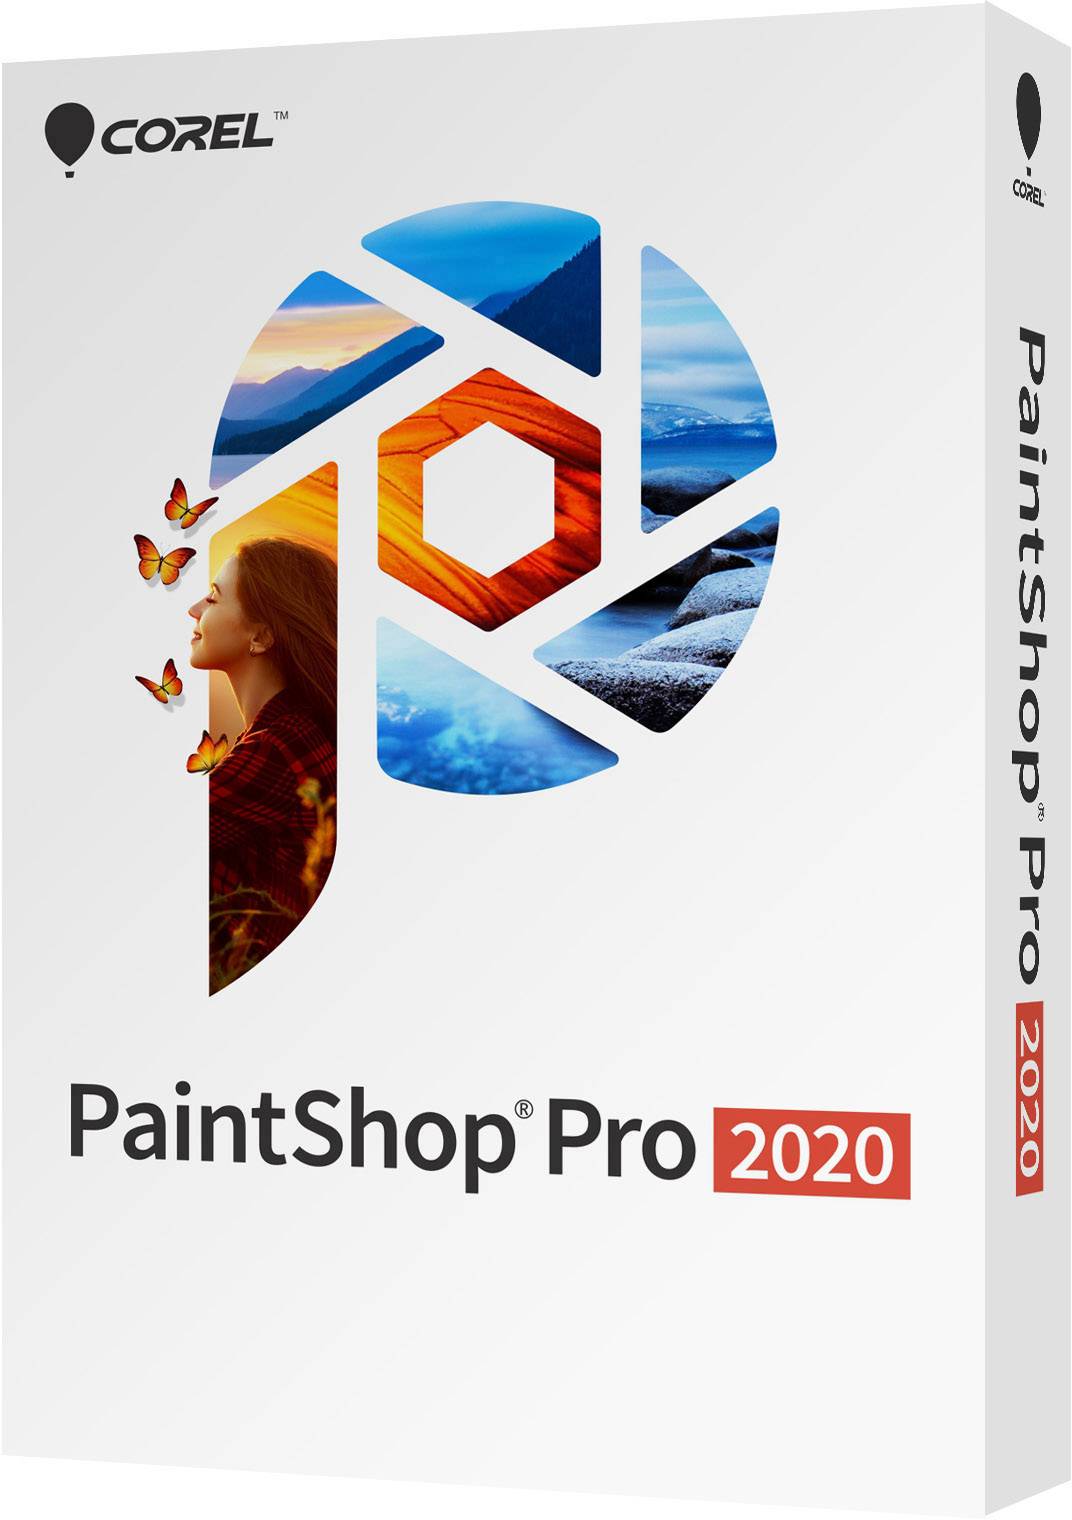 paint shop pro 2020 reviews